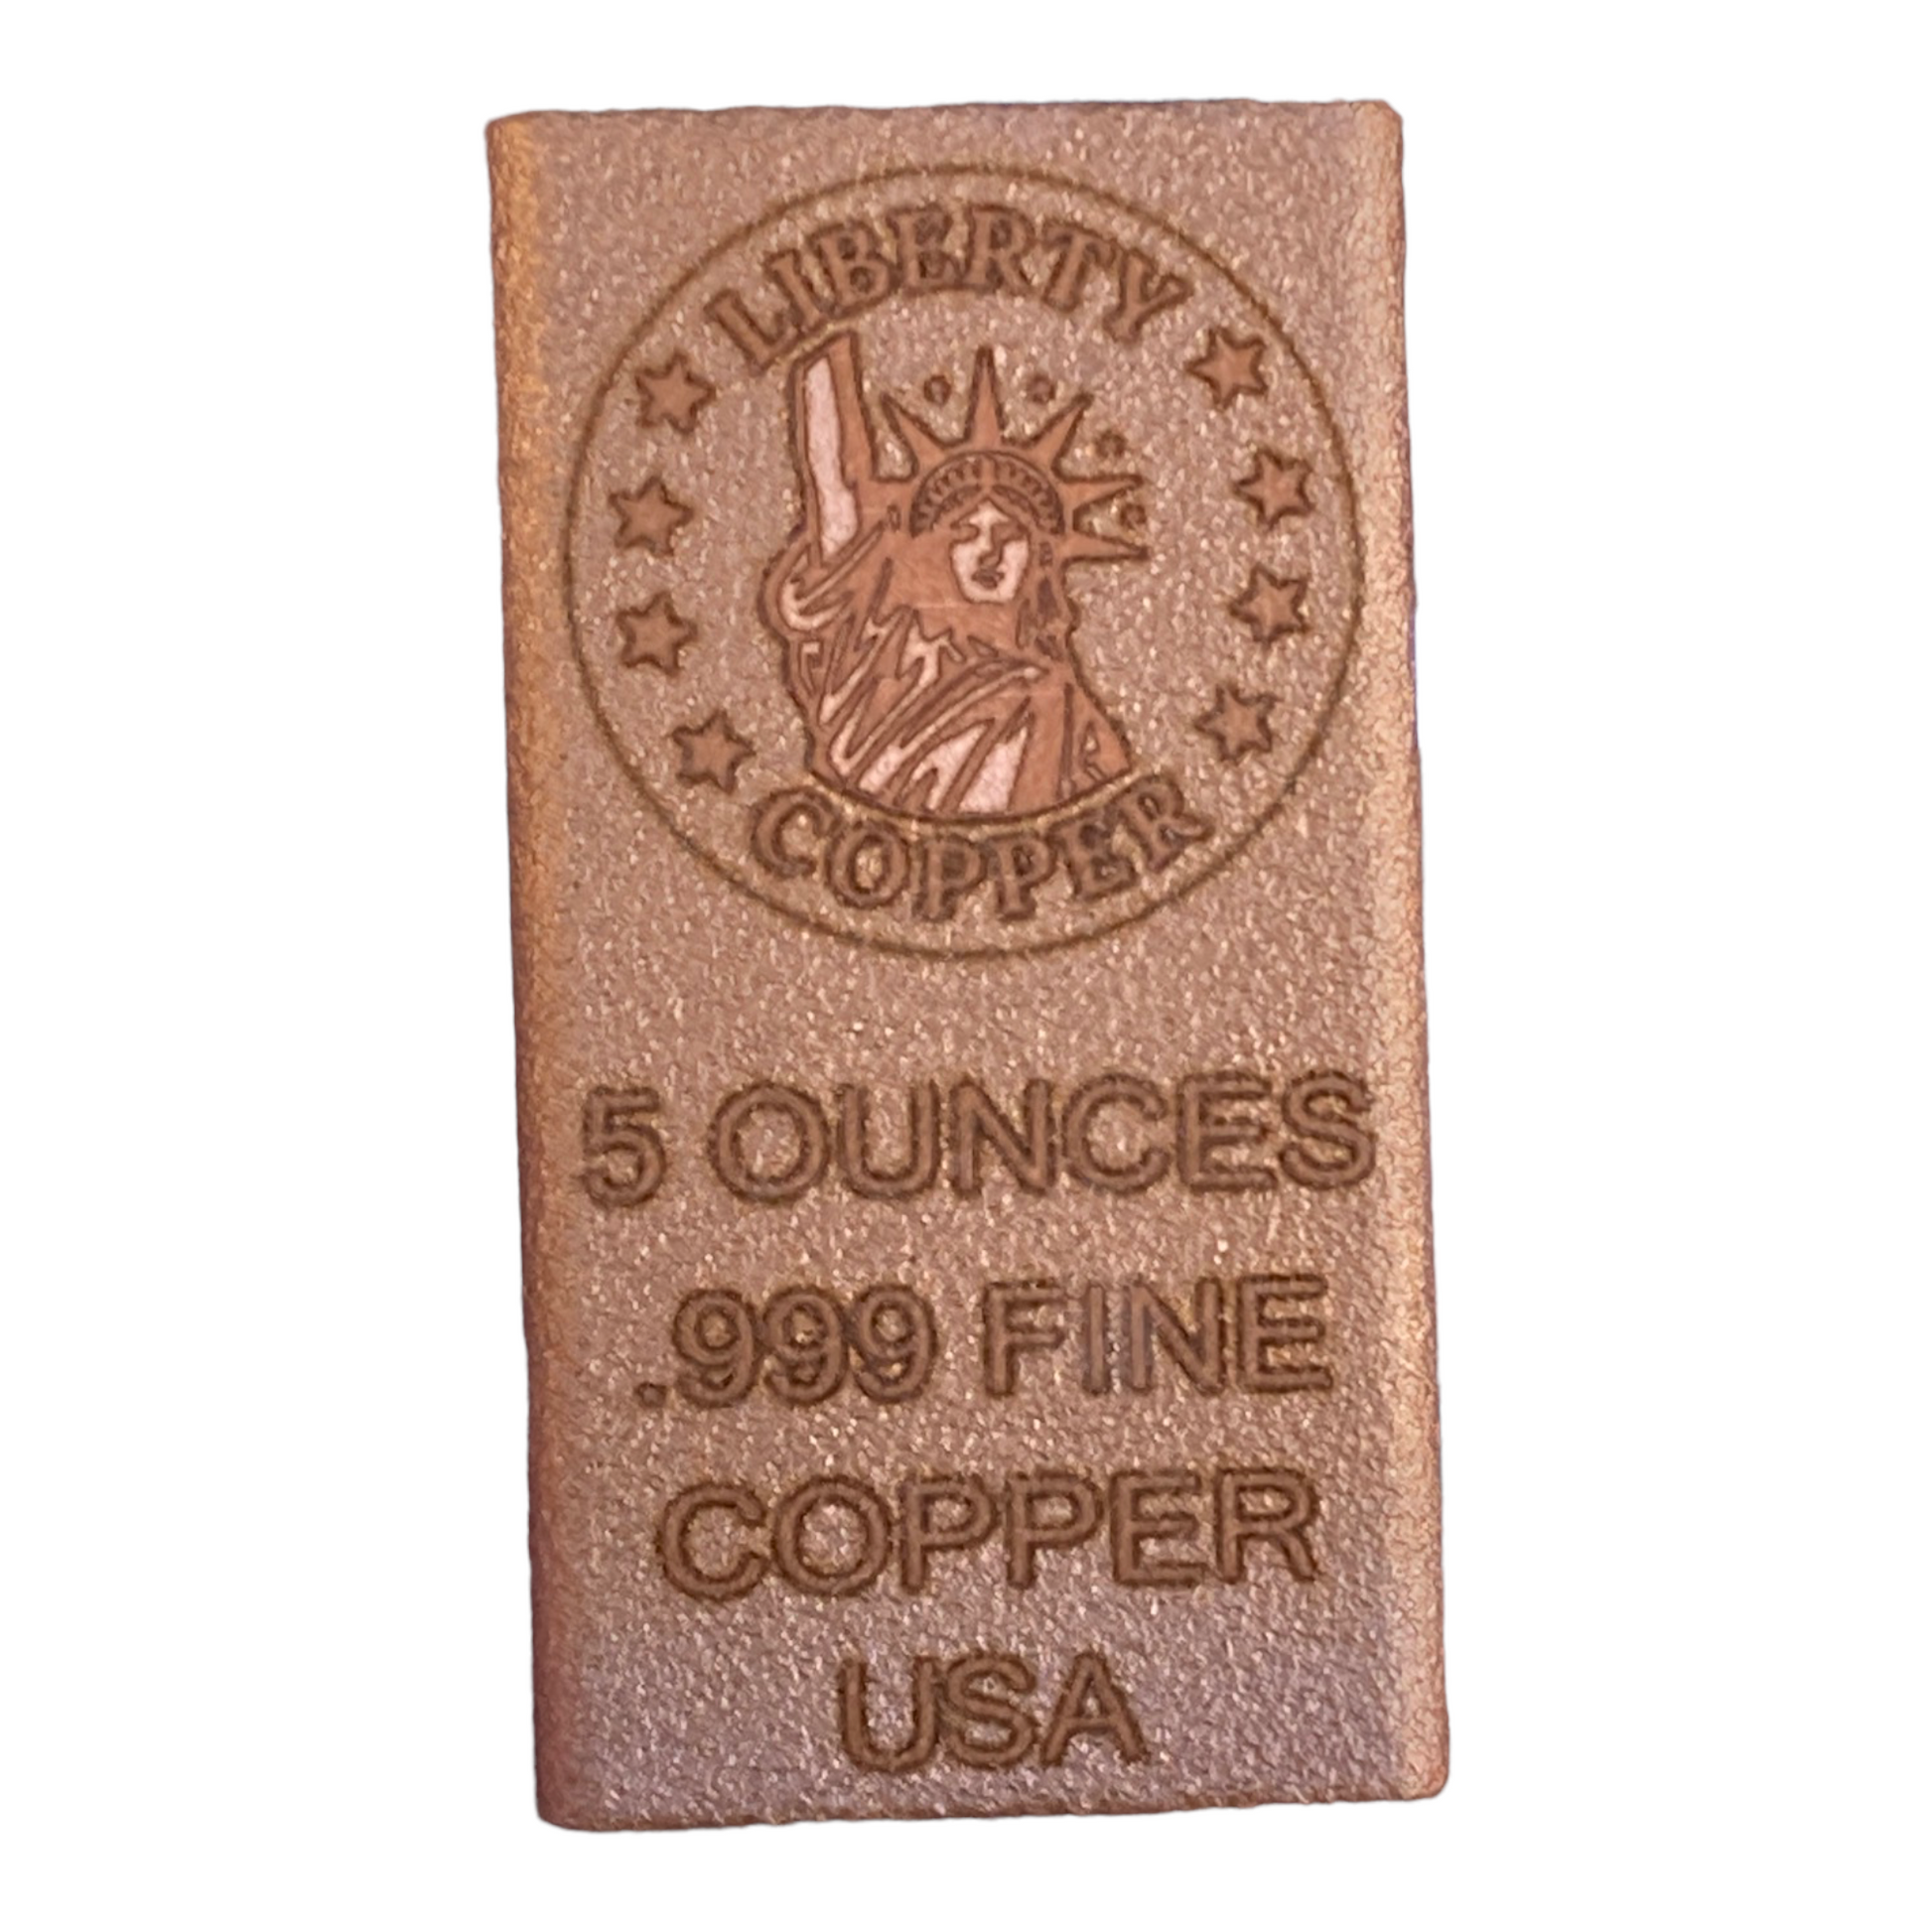 Liberty Copper Design 5 oz Copper Bullion Bar by Liberty Copper